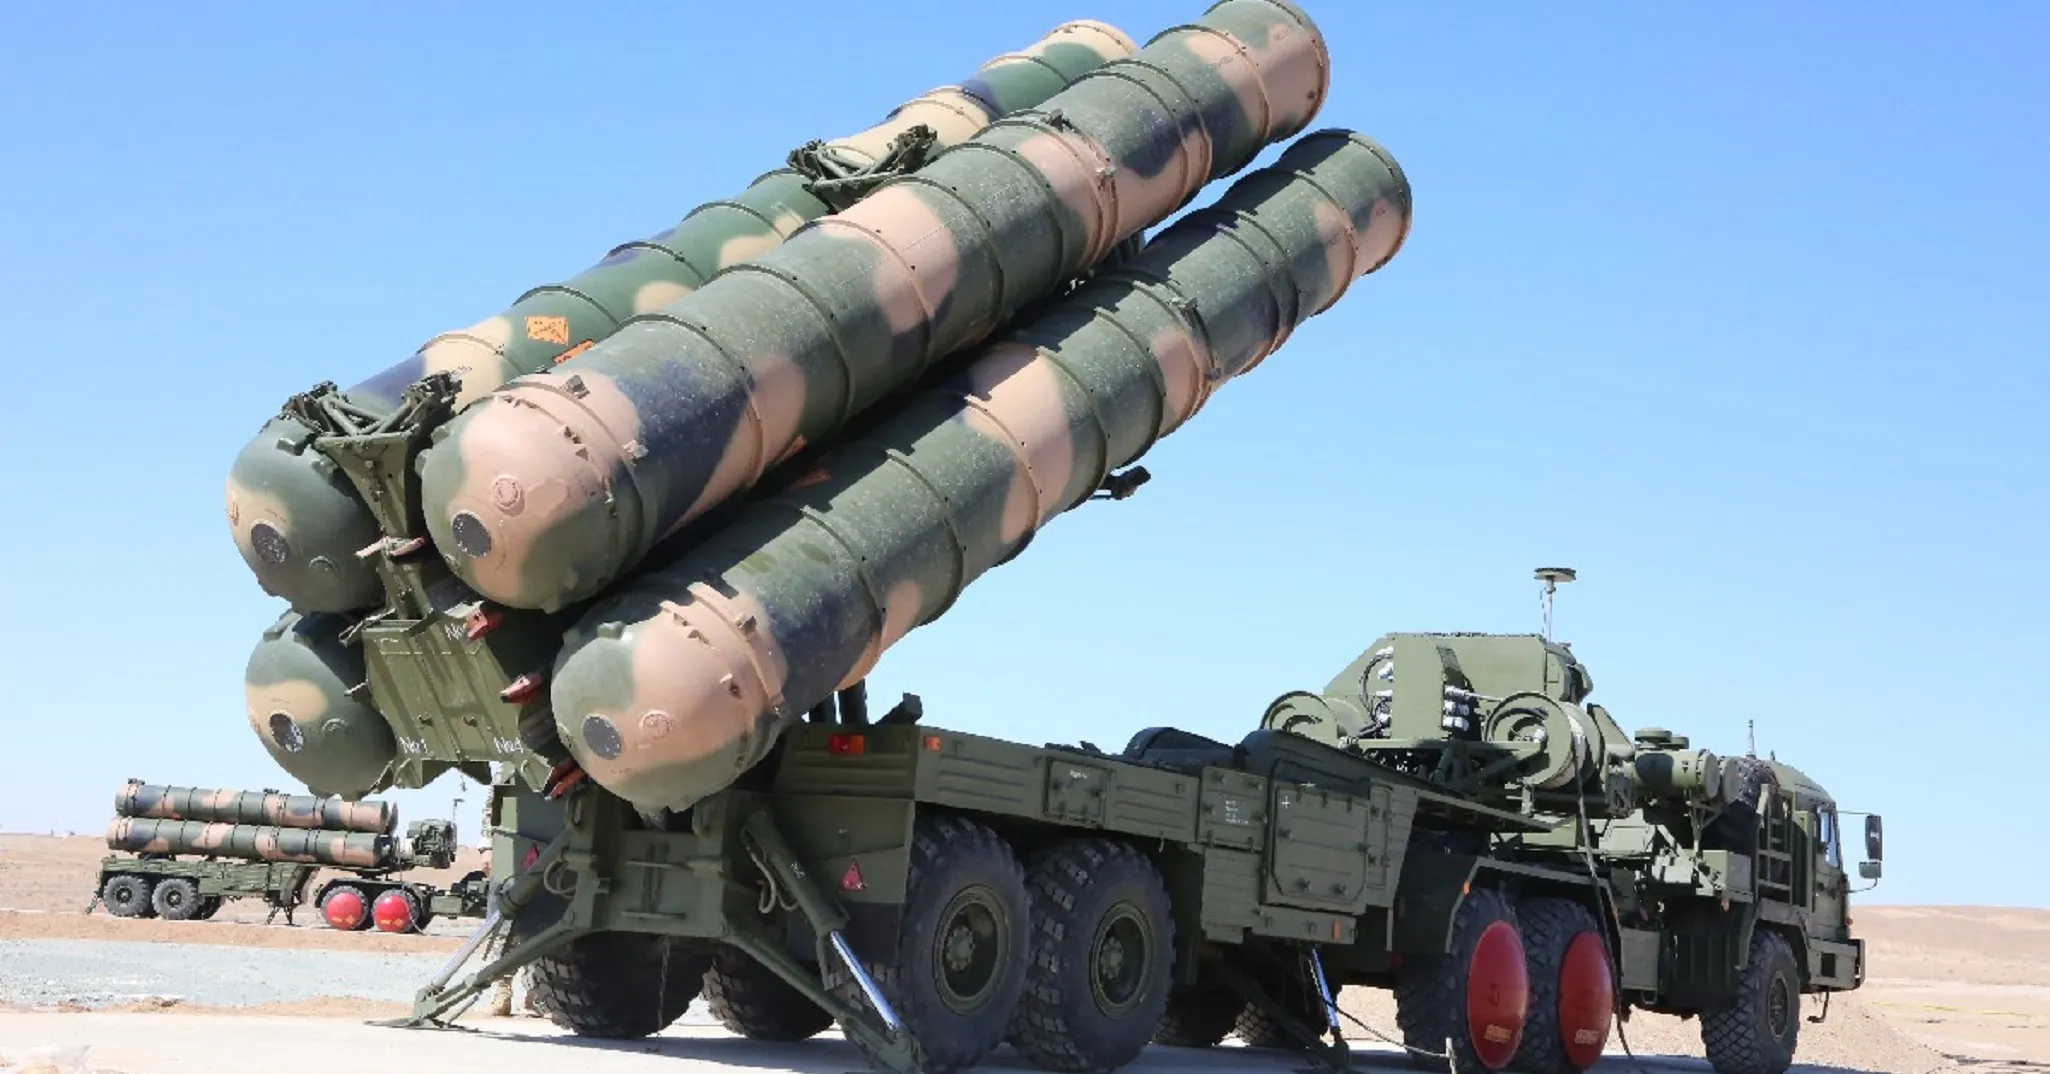 روسيا تُفكك نظام "إس-300" في سوريا وتعيده إلى موسكو بسبب غزوها لأوكرانيا